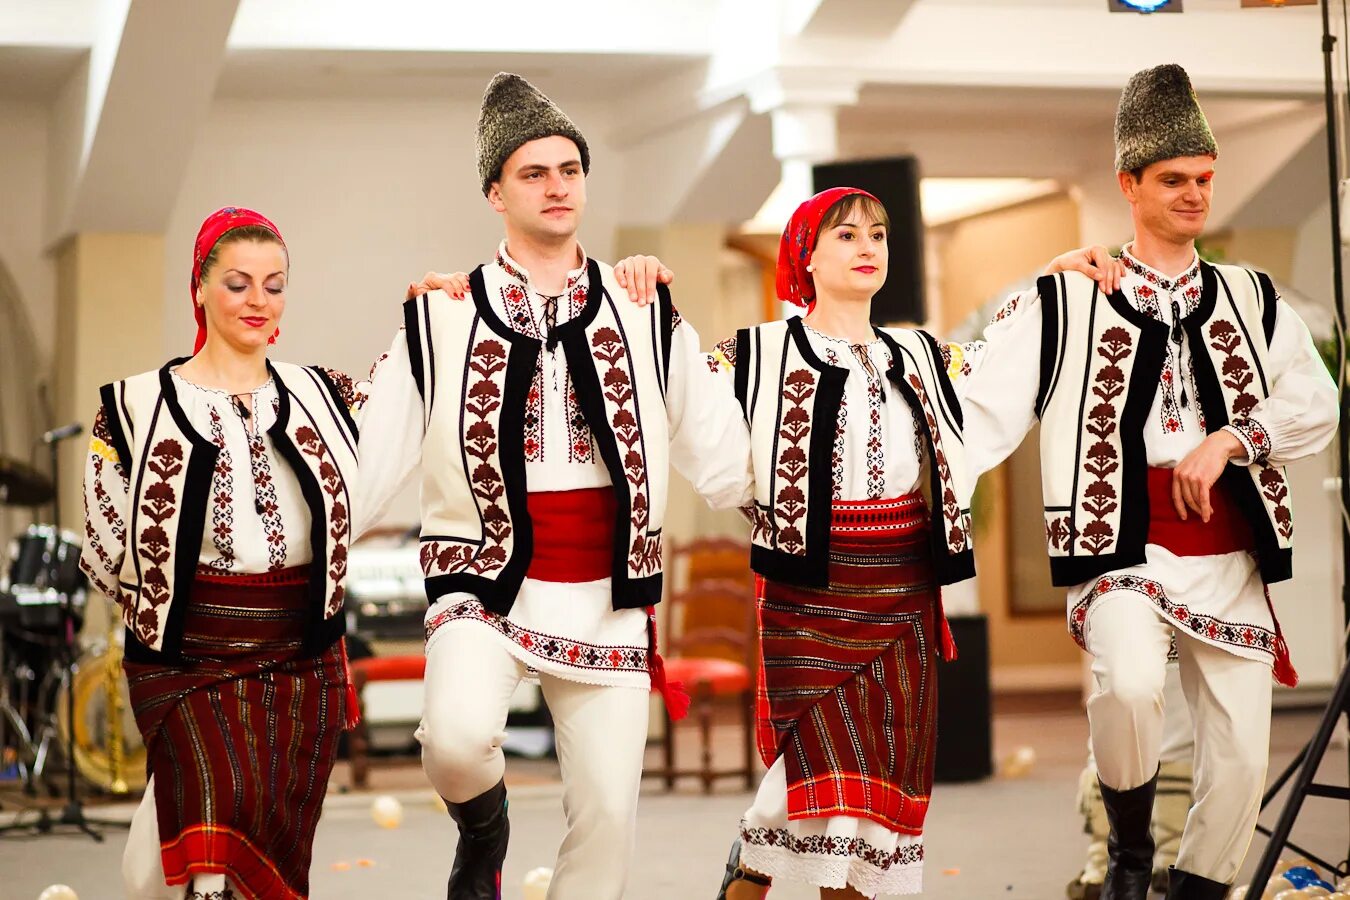 Молдаван нация. Национальный костюм Молдавии. Национальная одежда румынцев и Молдовы. Национальный костюм Молдавии мужской. Костюм Националь Молдовенеск.